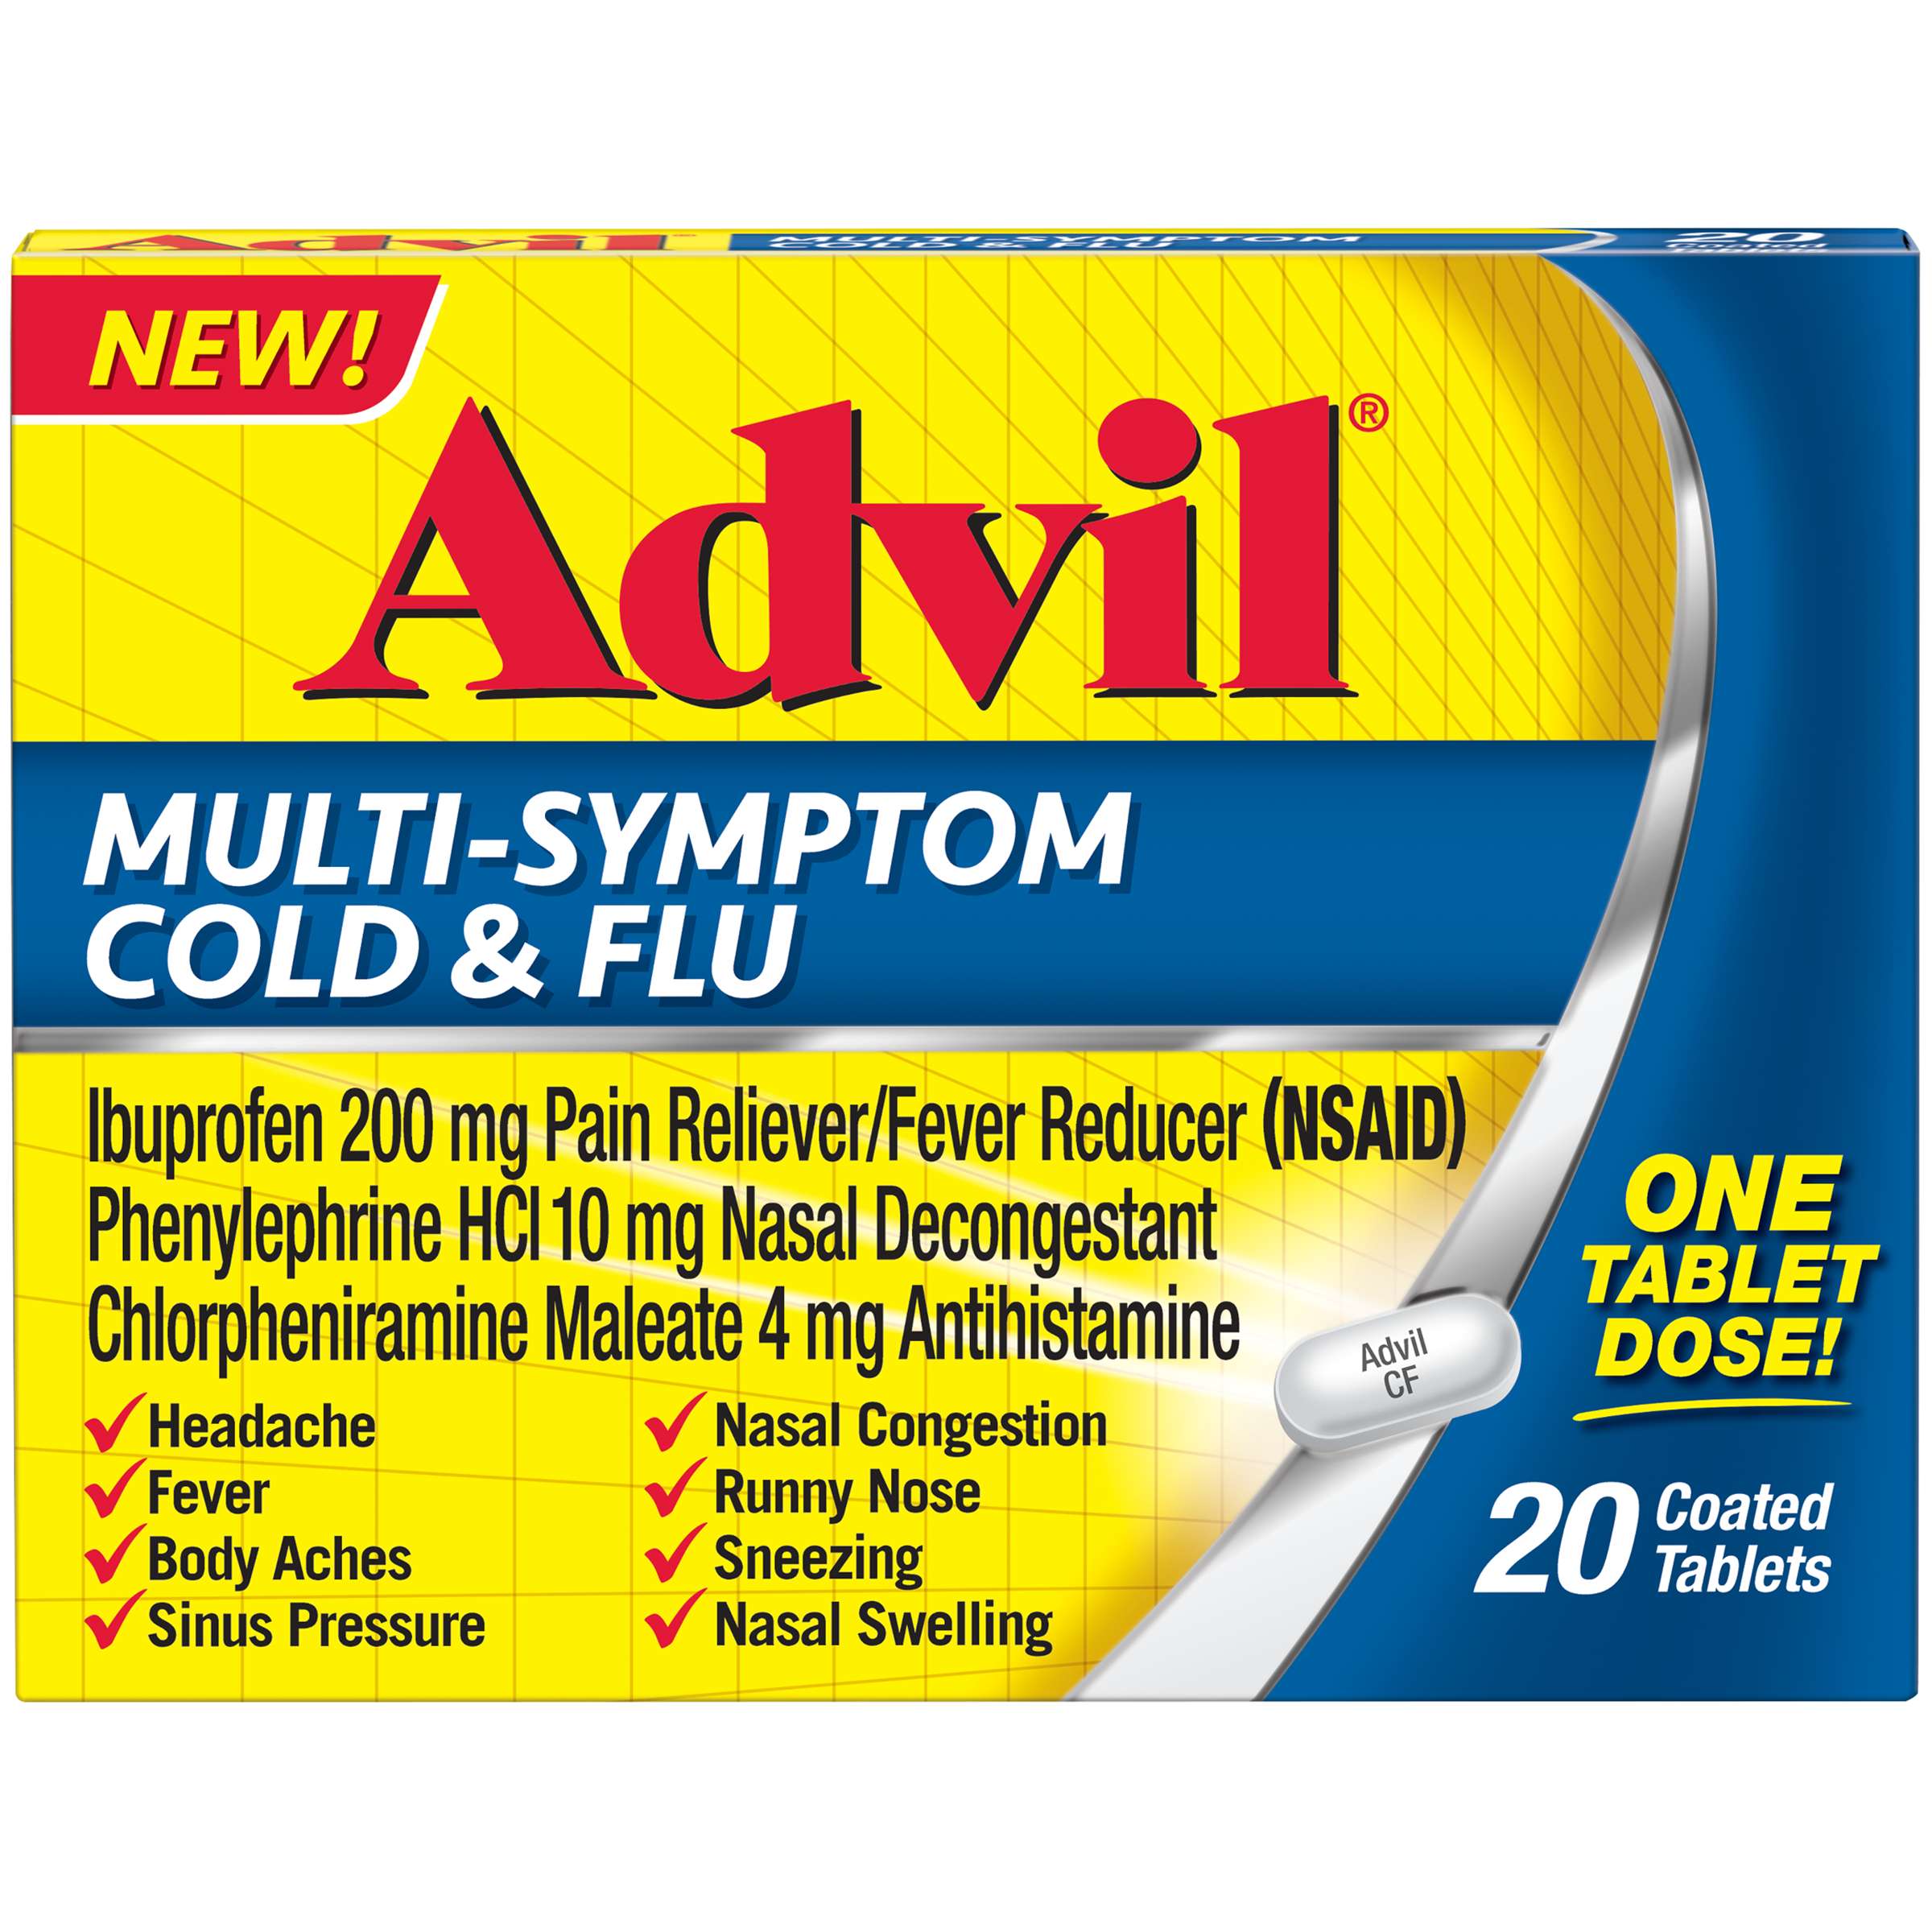 Advil Multi